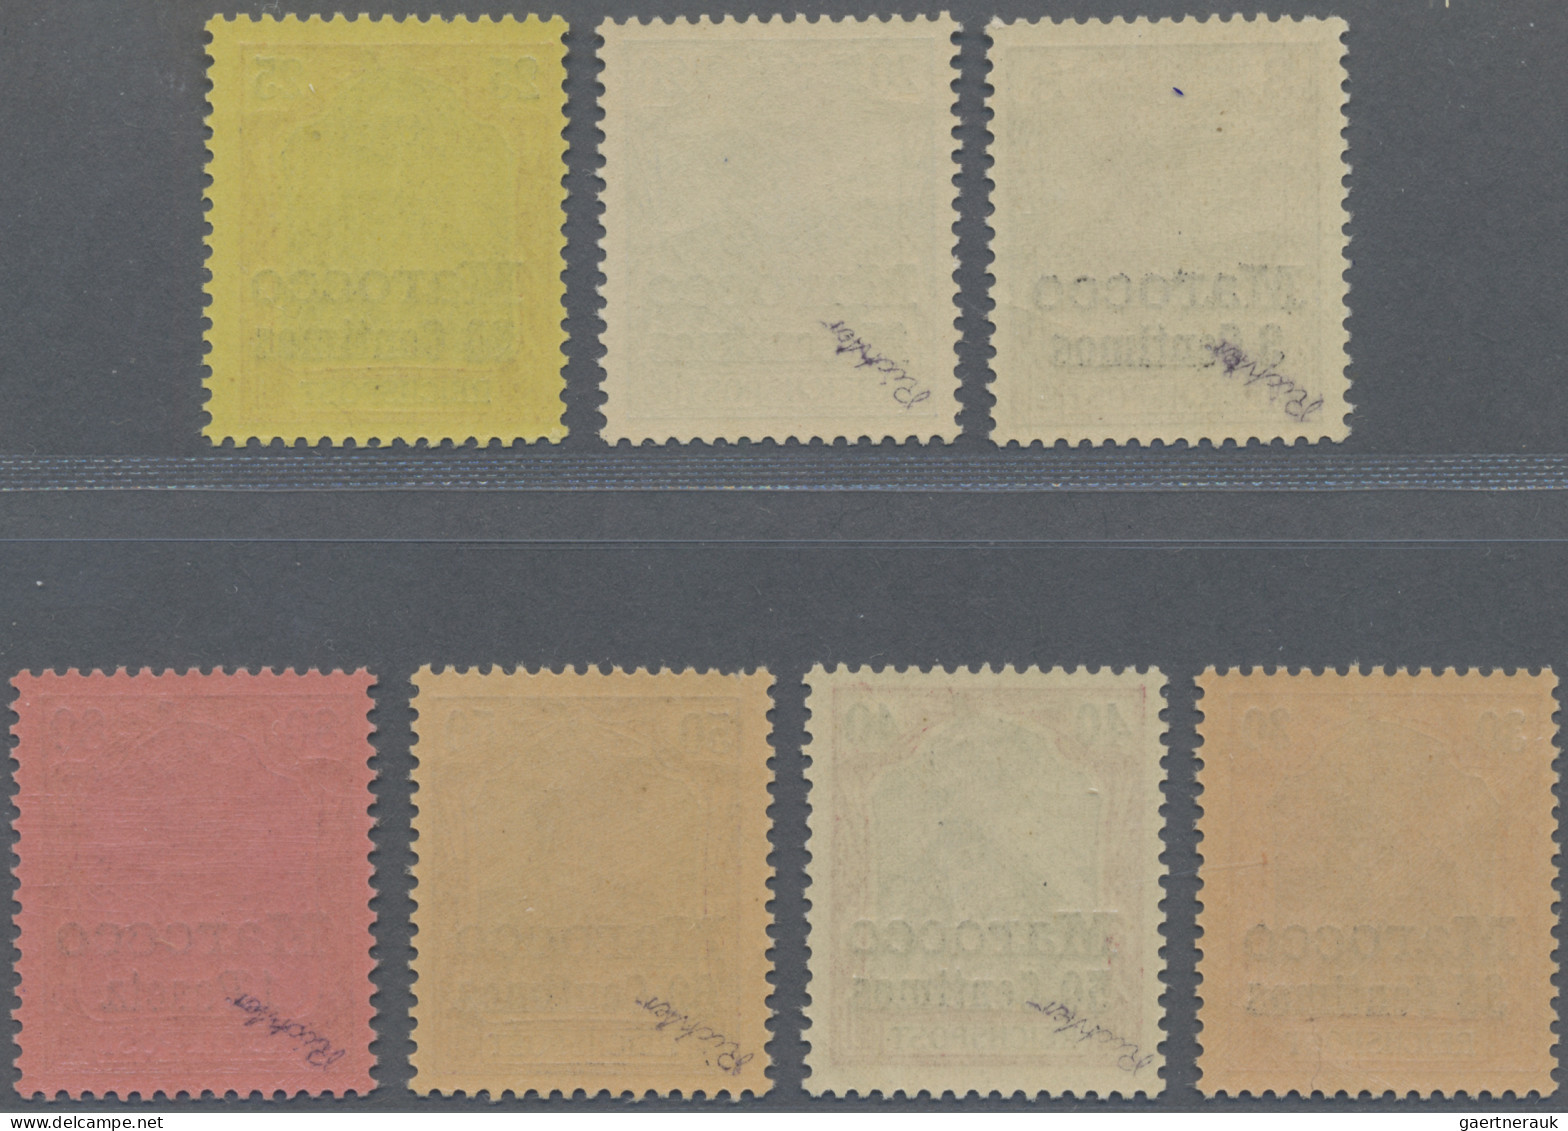 Deutsche Post in Marokko: 1900 Amtlich nicht ausgegebener, aber 1923 versteigert